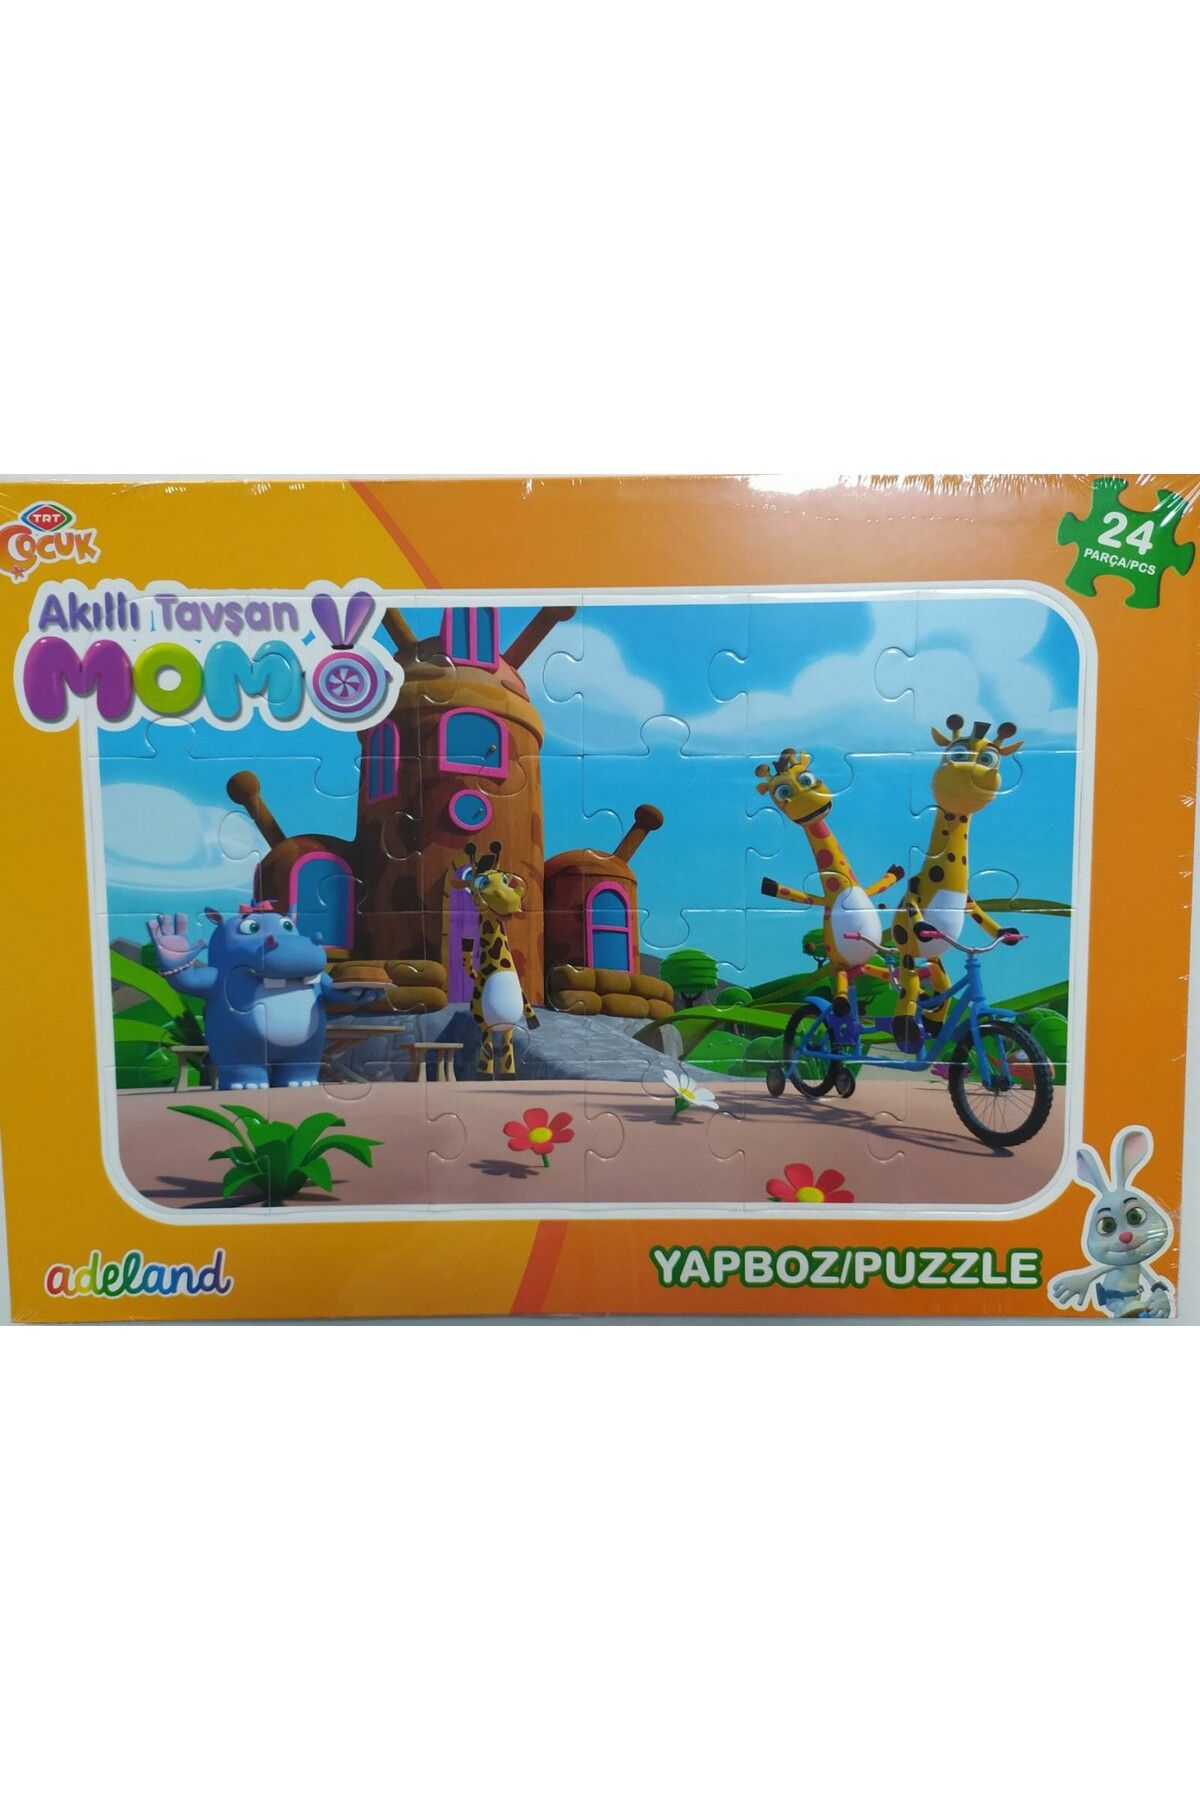 ADELAND Trt Çocuk Akıllı Tavşan Momo24 Parça Yapboz (puzzle)